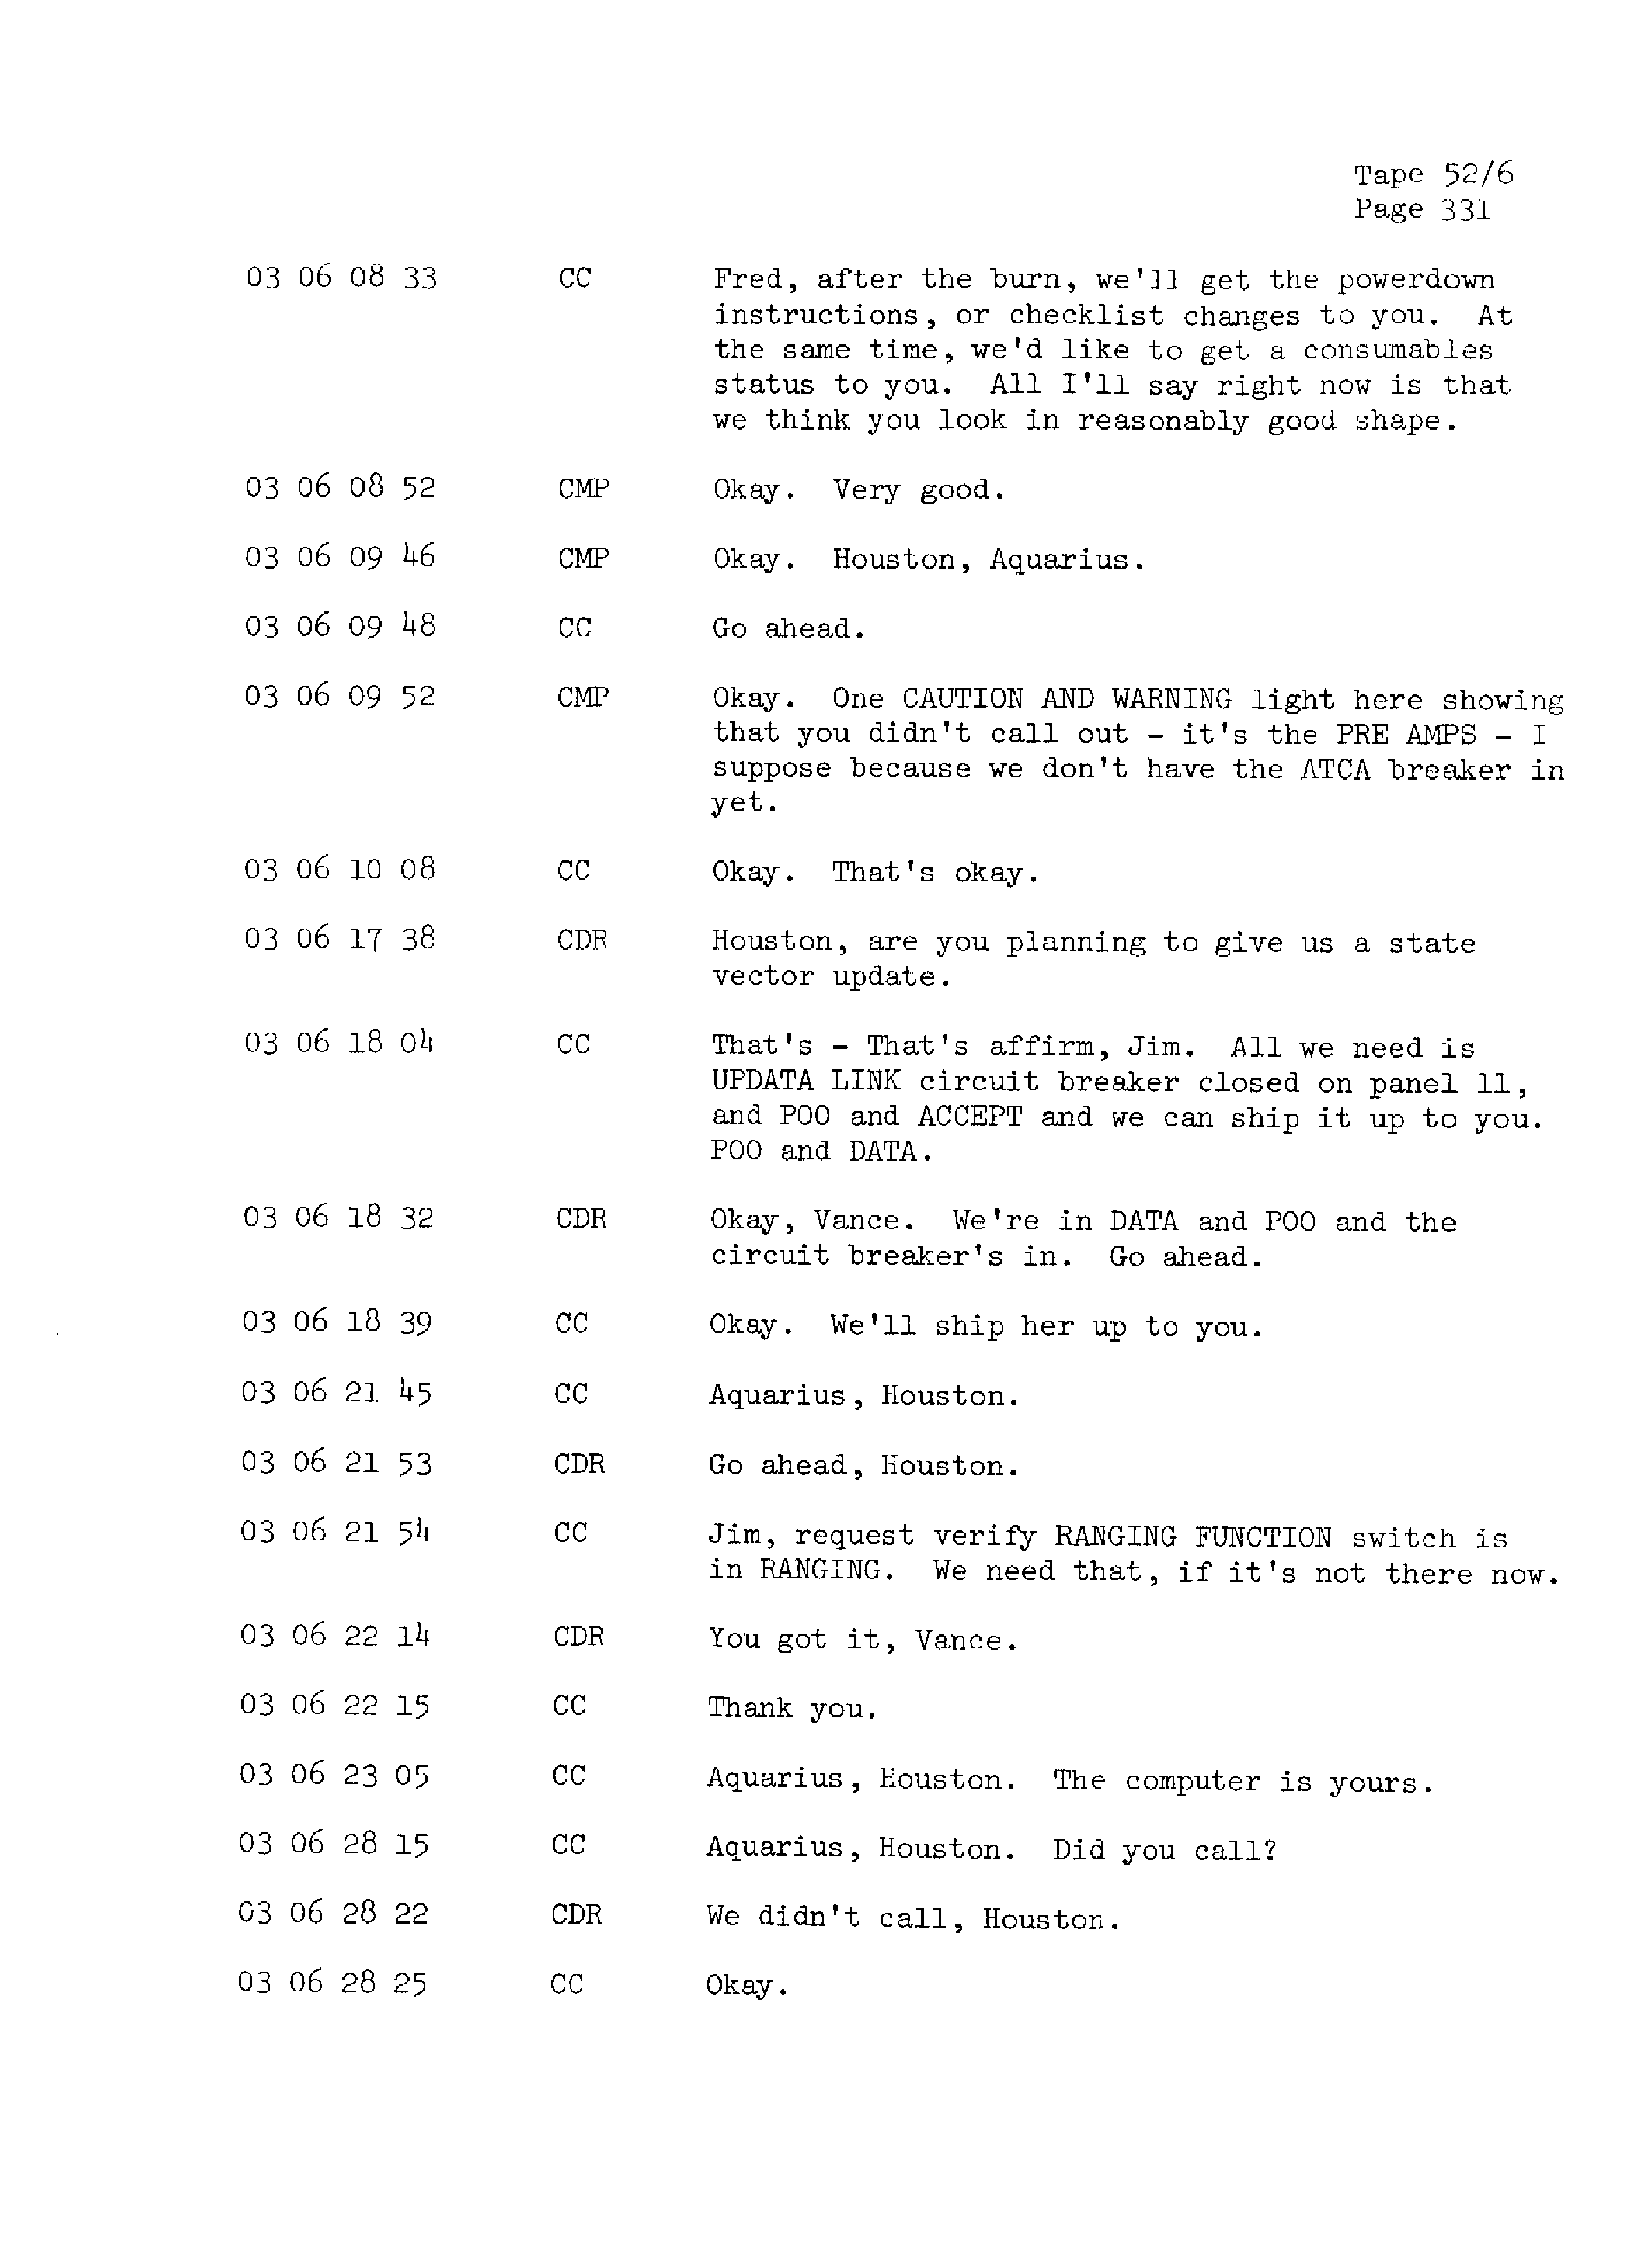 Page 338 of Apollo 13’s original transcript